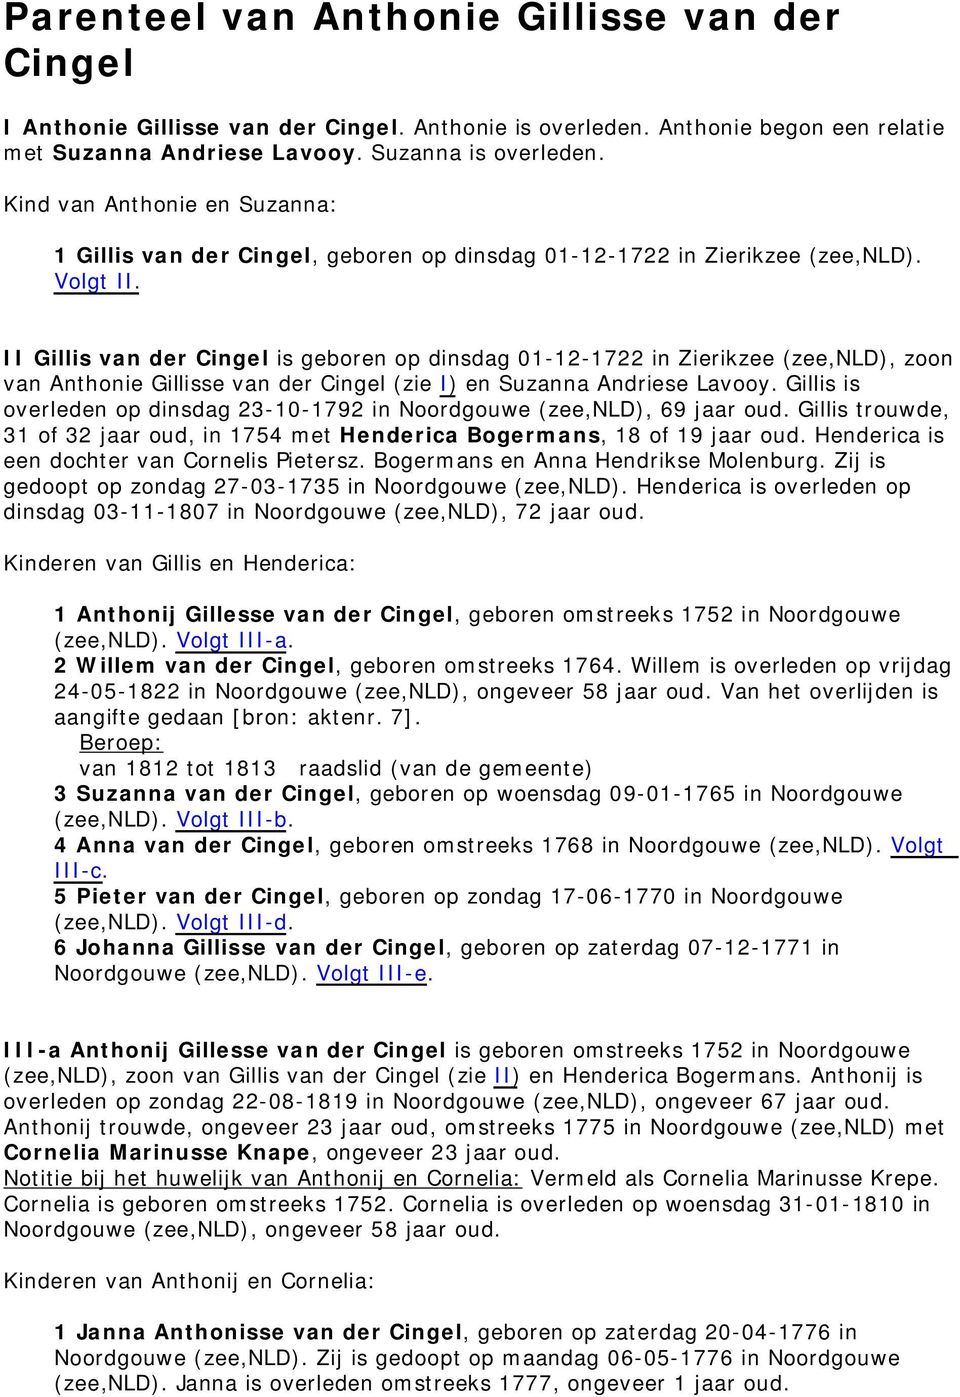 II Gillis van der Cingel is geboren op dinsdag 01-12-1722 in Zierikzee (zee,nld), zoon van Anthonie Gillisse van der Cingel (zie I) en Suzanna Andriese Lavooy.